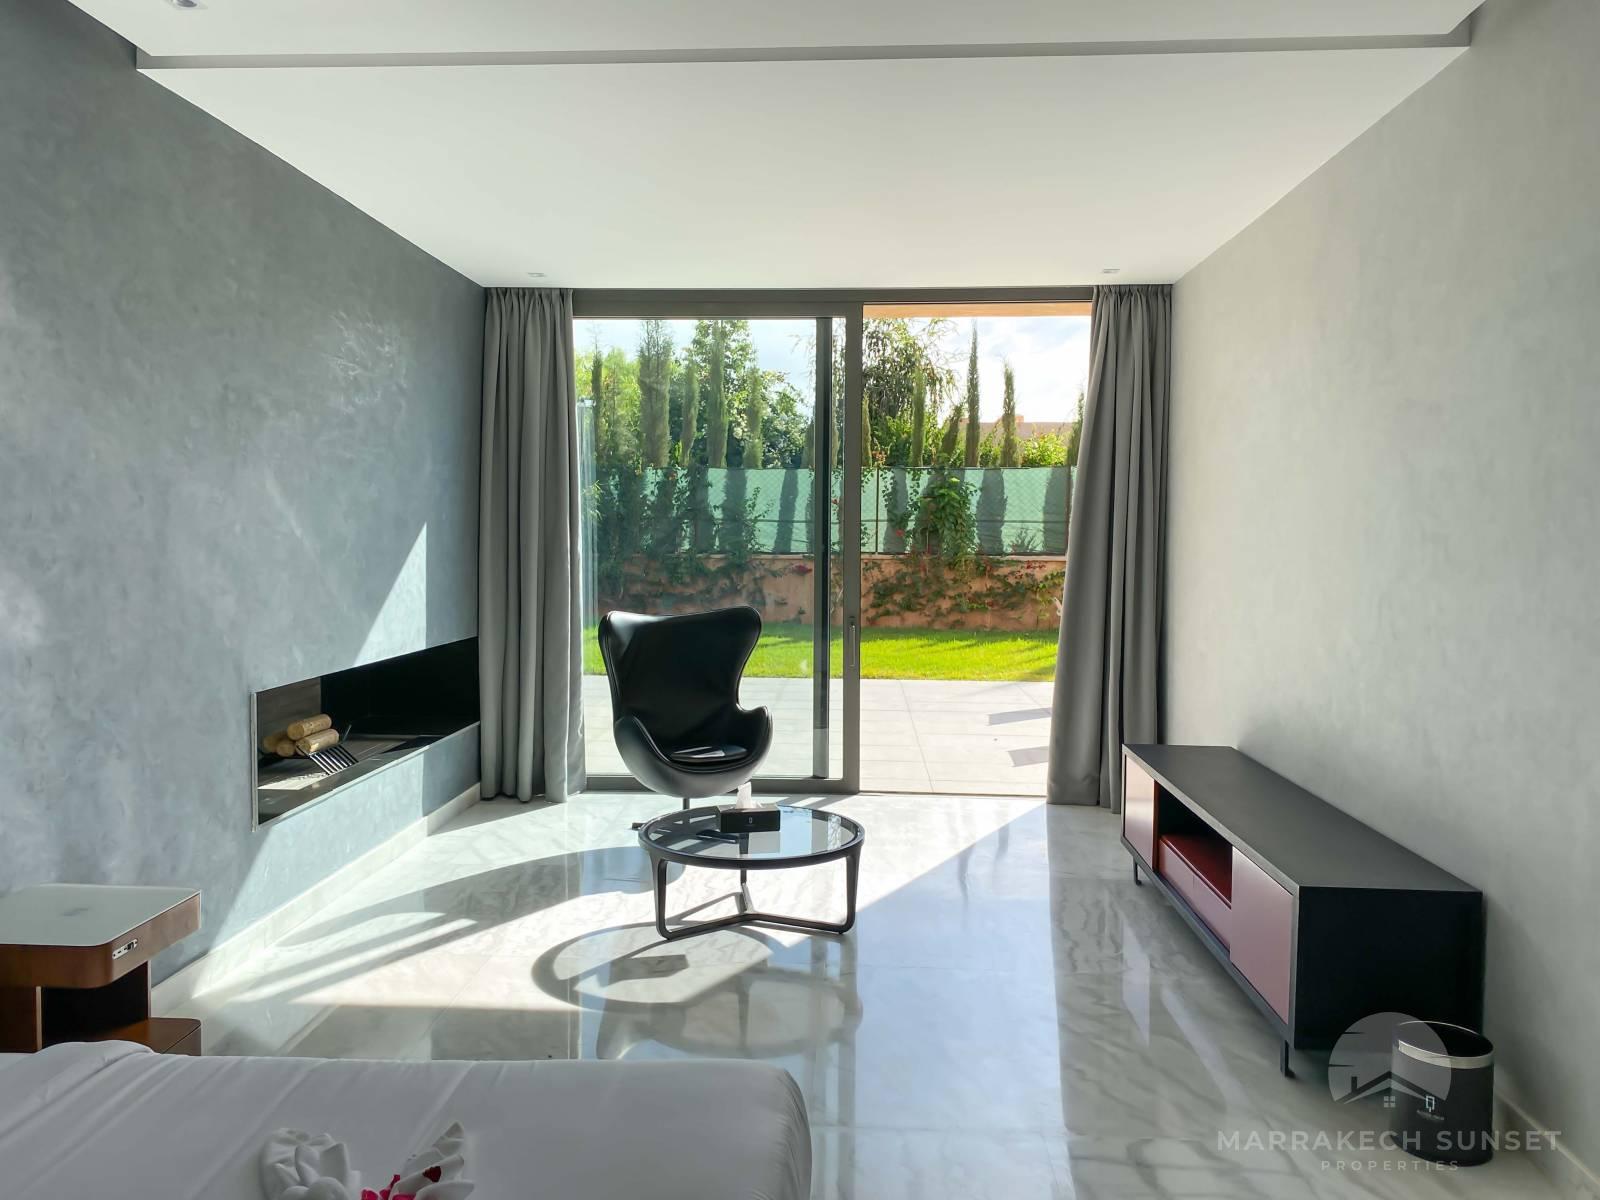 Premium 5 bedroom Luxury villa for sale in a private domain Marrakech